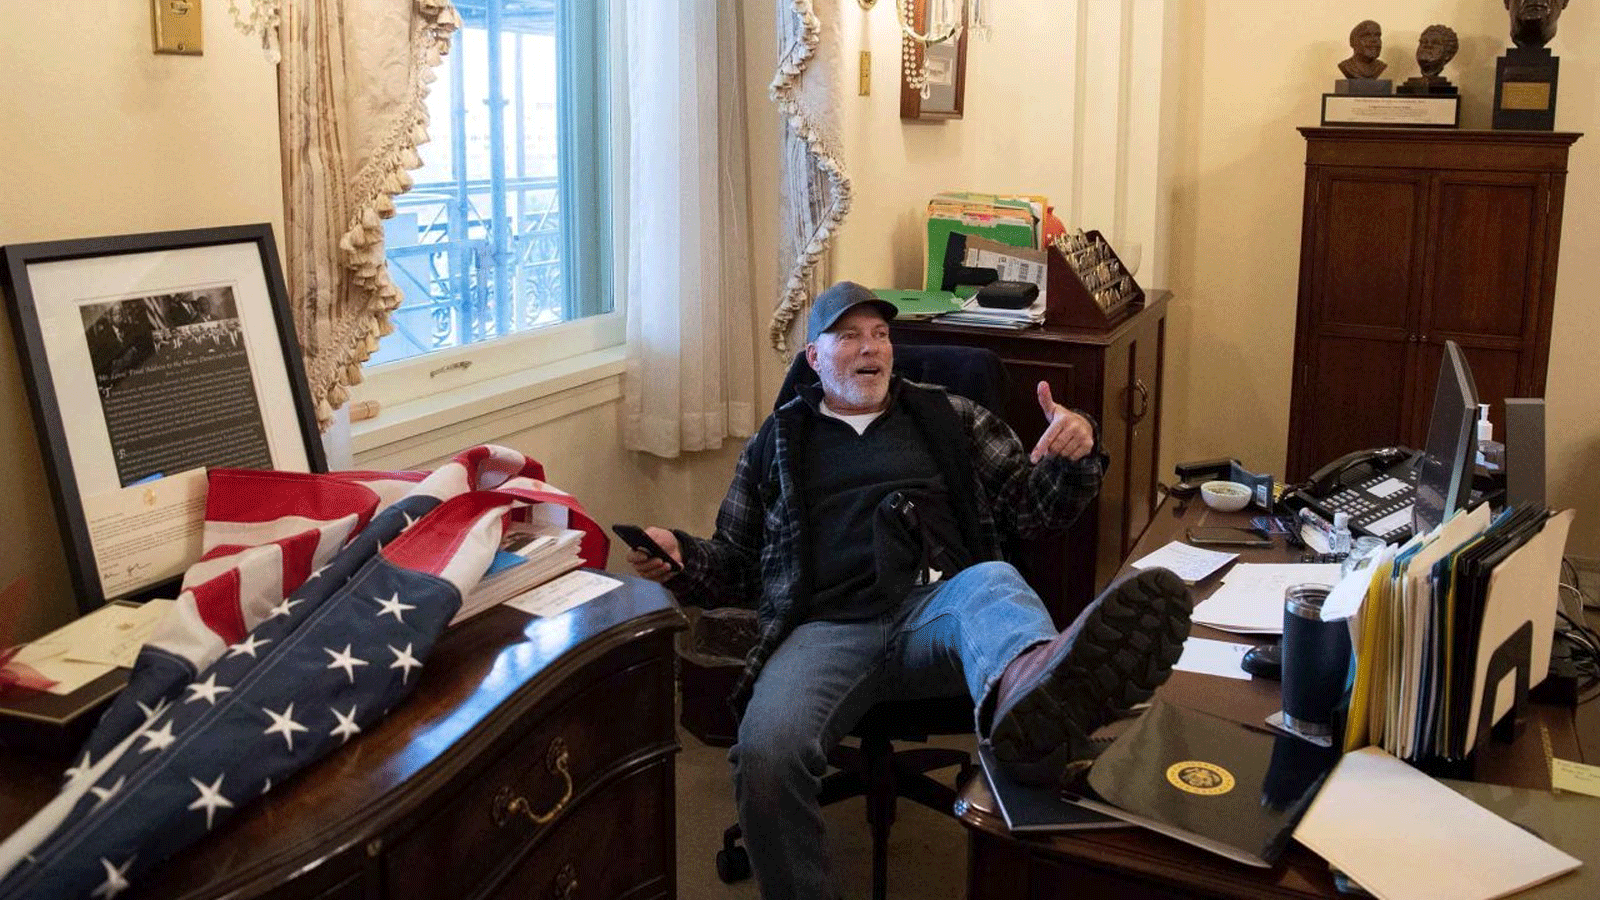 ريتشارد بارنيت، من أنصار الرئيس الأميركي دونالد ترامب، يجلس داخل مكتب رئيسة مجلس النواب الأميركي نانسي بيلوسي أثناء احتجاجه داخل مبنى الكابيتول الأميركي في واشنطن العاصمة. 6 كانون الثاني\يناير 2021